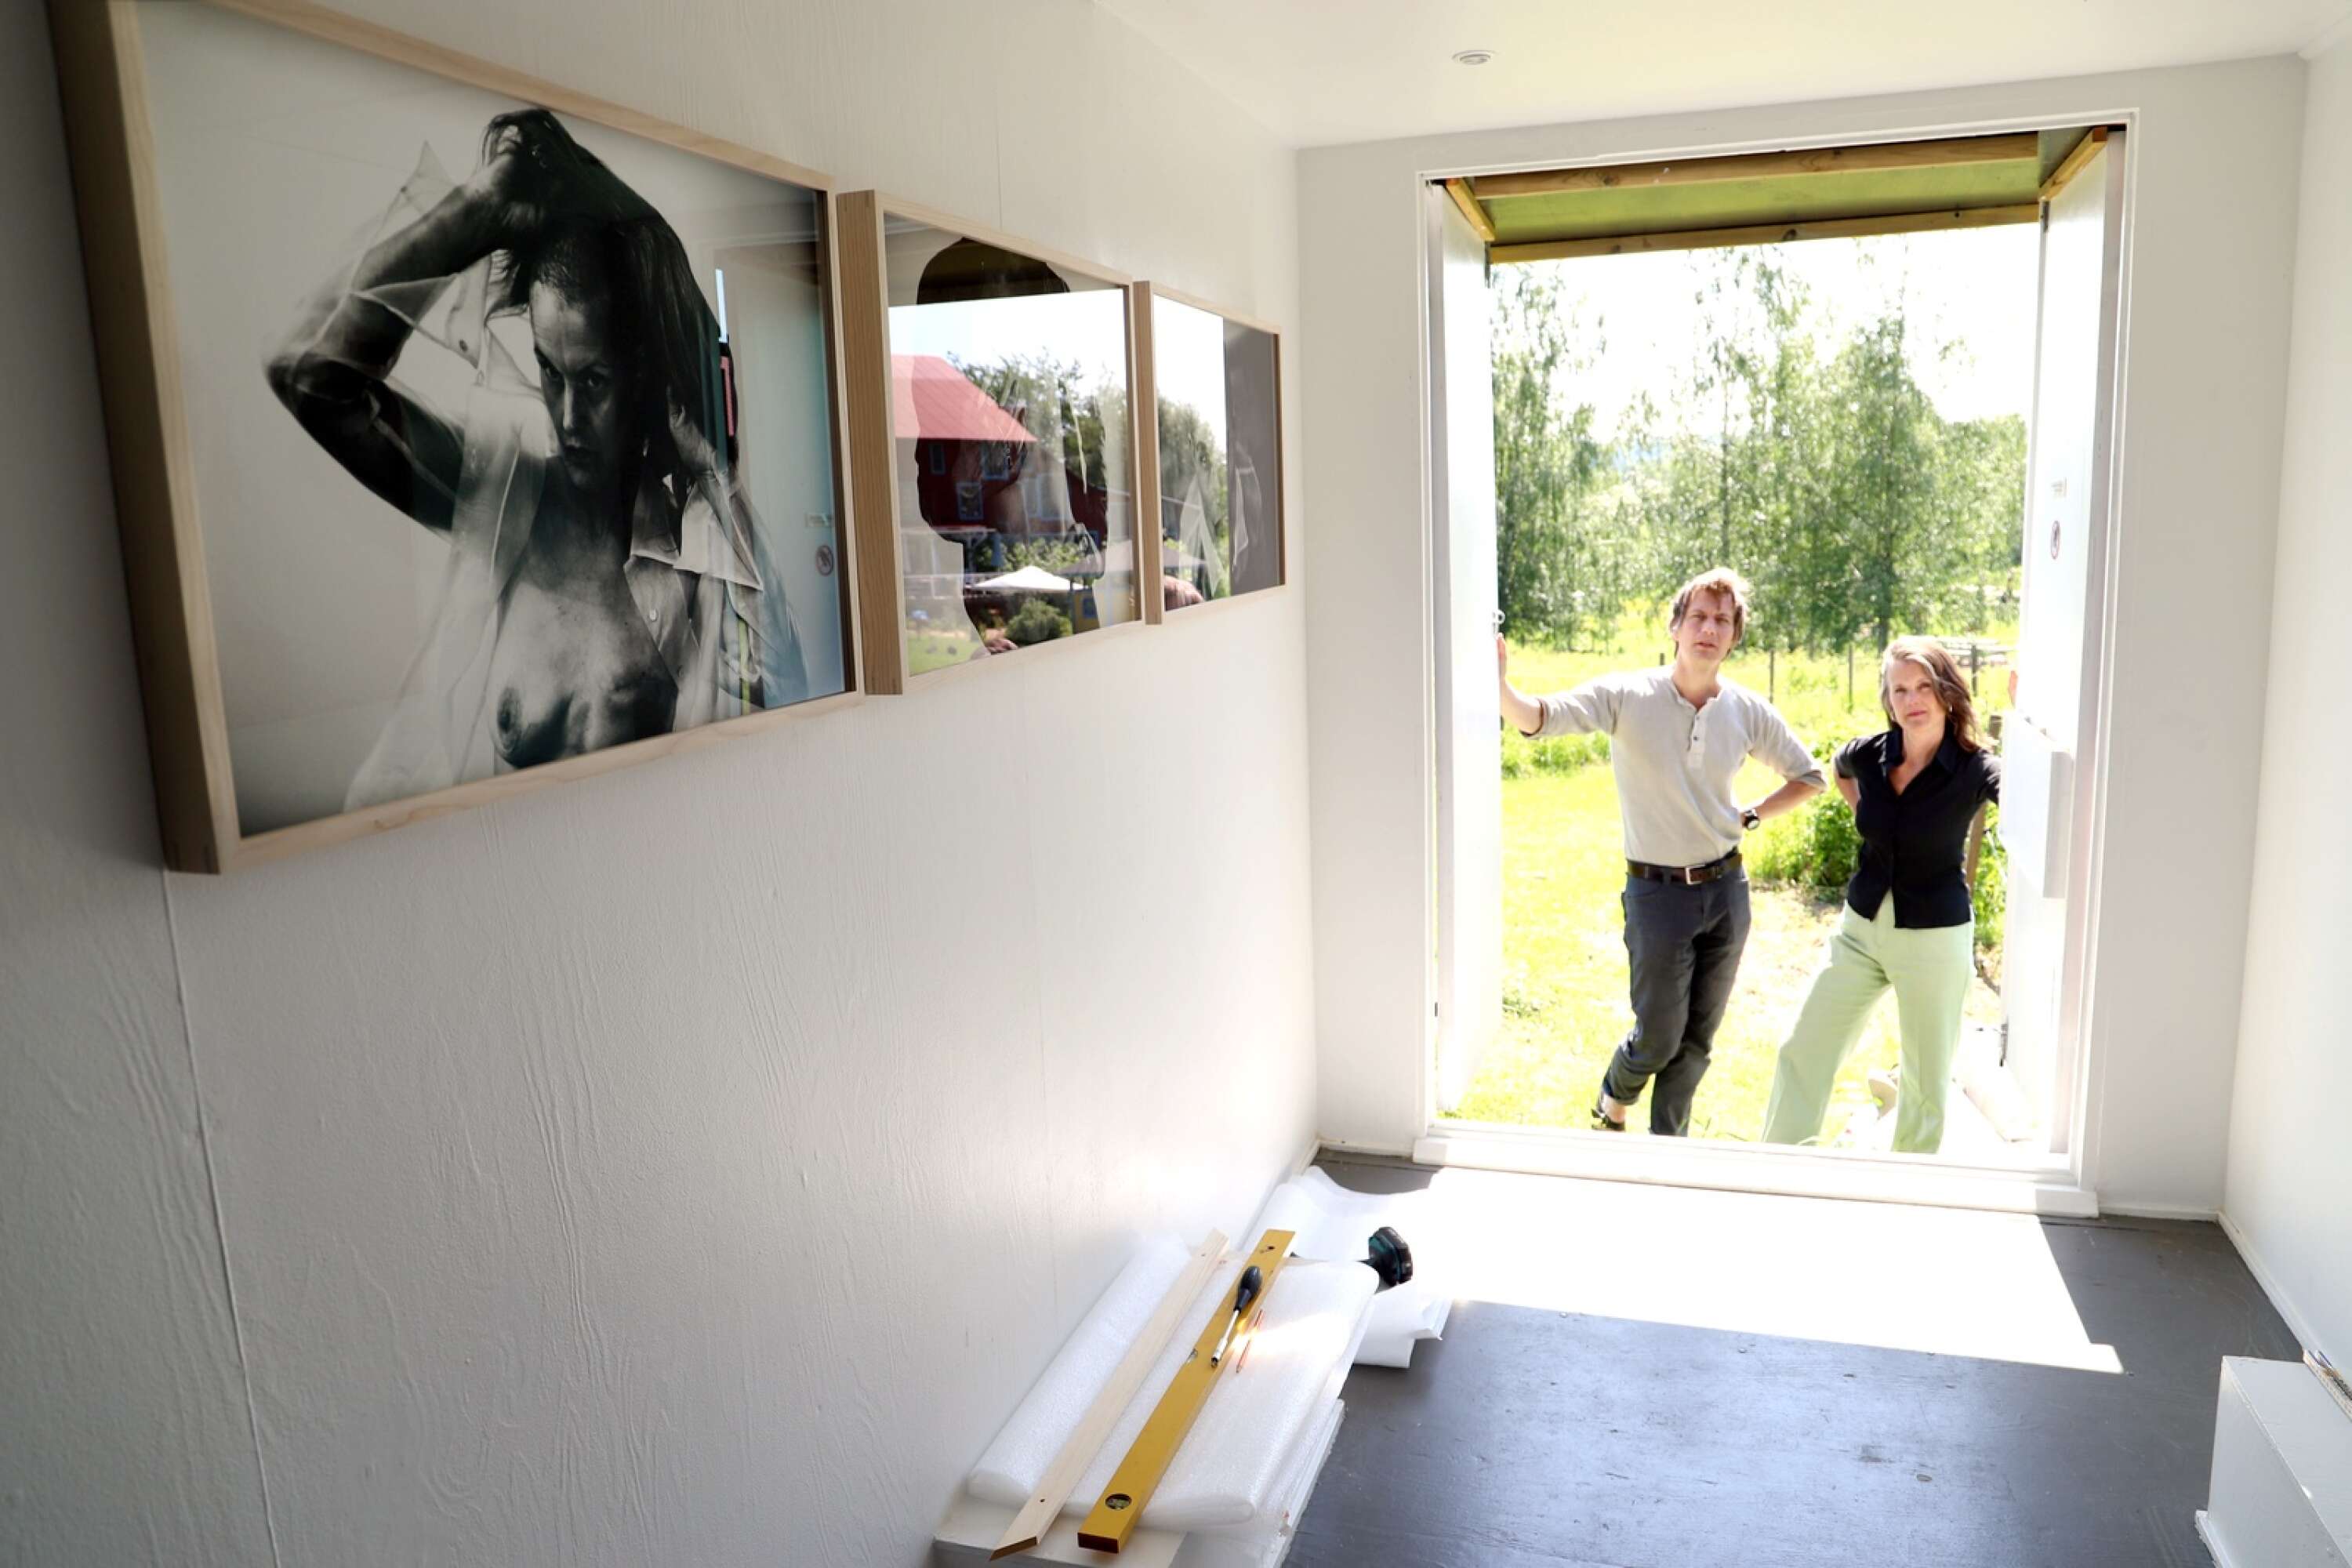 Åsa Kalmér och Jörgen Hjerdt visar utställningen Ärr på Alma Löv i sommar. Det är bilder skapade efter att Åsa fick bröstcancer och tvingades ta bort ett bröst. Bilderna visar både smärta och styrka. ”Det handlar om att estetisera ett tabu”, säger fotografen Jörgen.